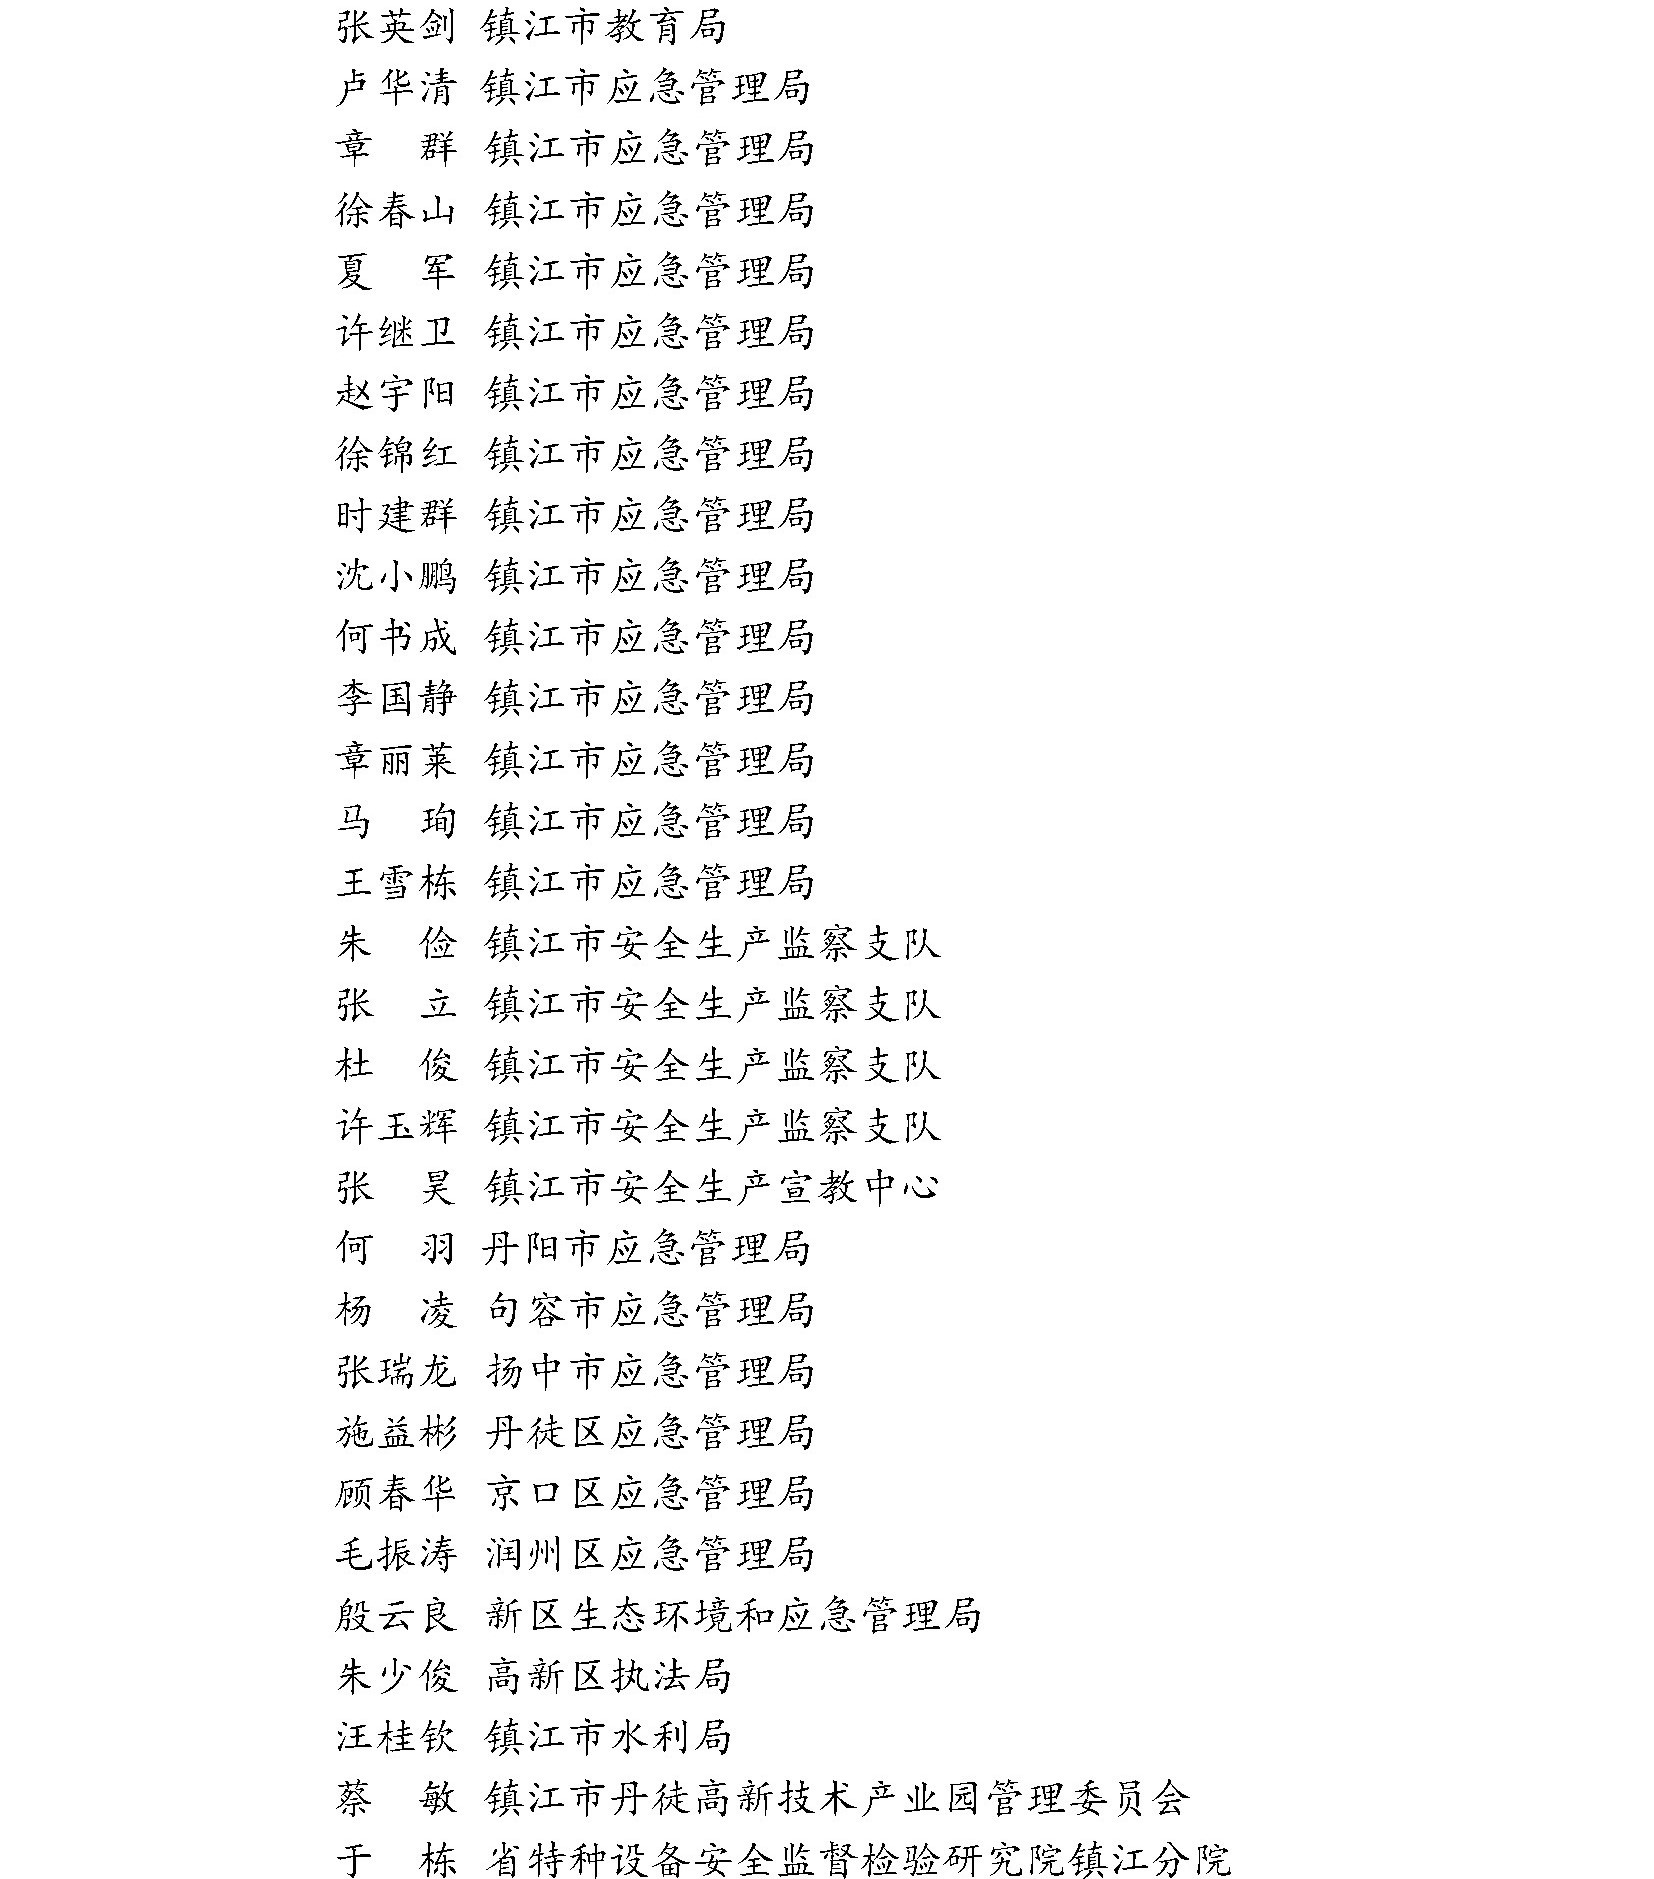 镇江市安全生产科学技术学会专家委员会成员名单公示(图6)